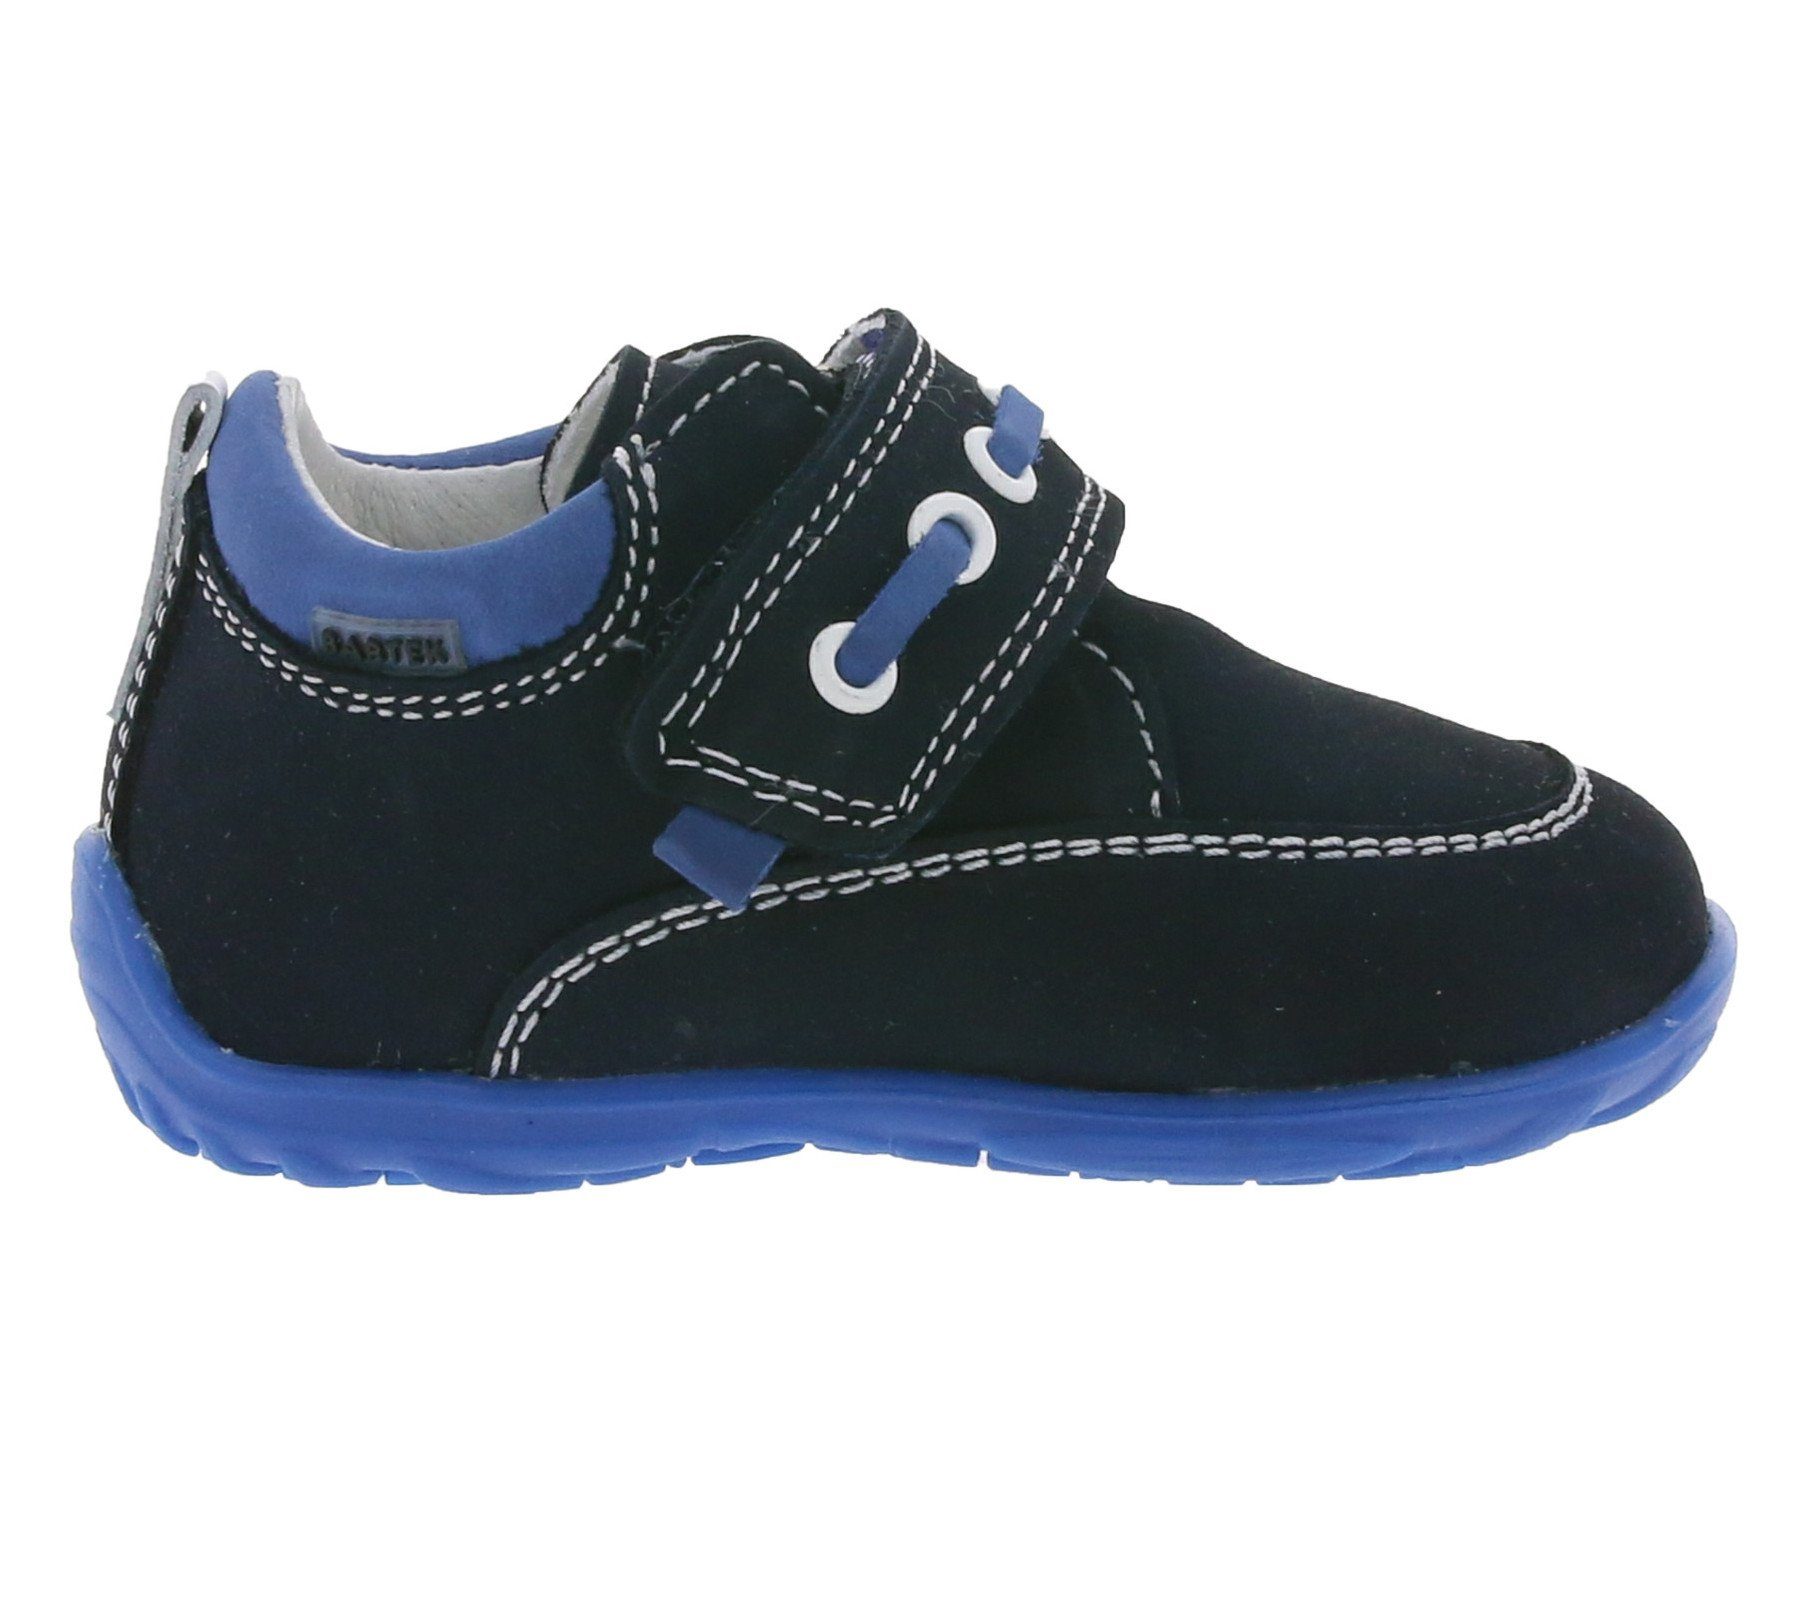 BARTEK »BARTEK Halbschuhe angenehme Schuhe für Babys oder Kleinkinder  Freizeitschuhe Blau« Sneaker online kaufen | OTTO